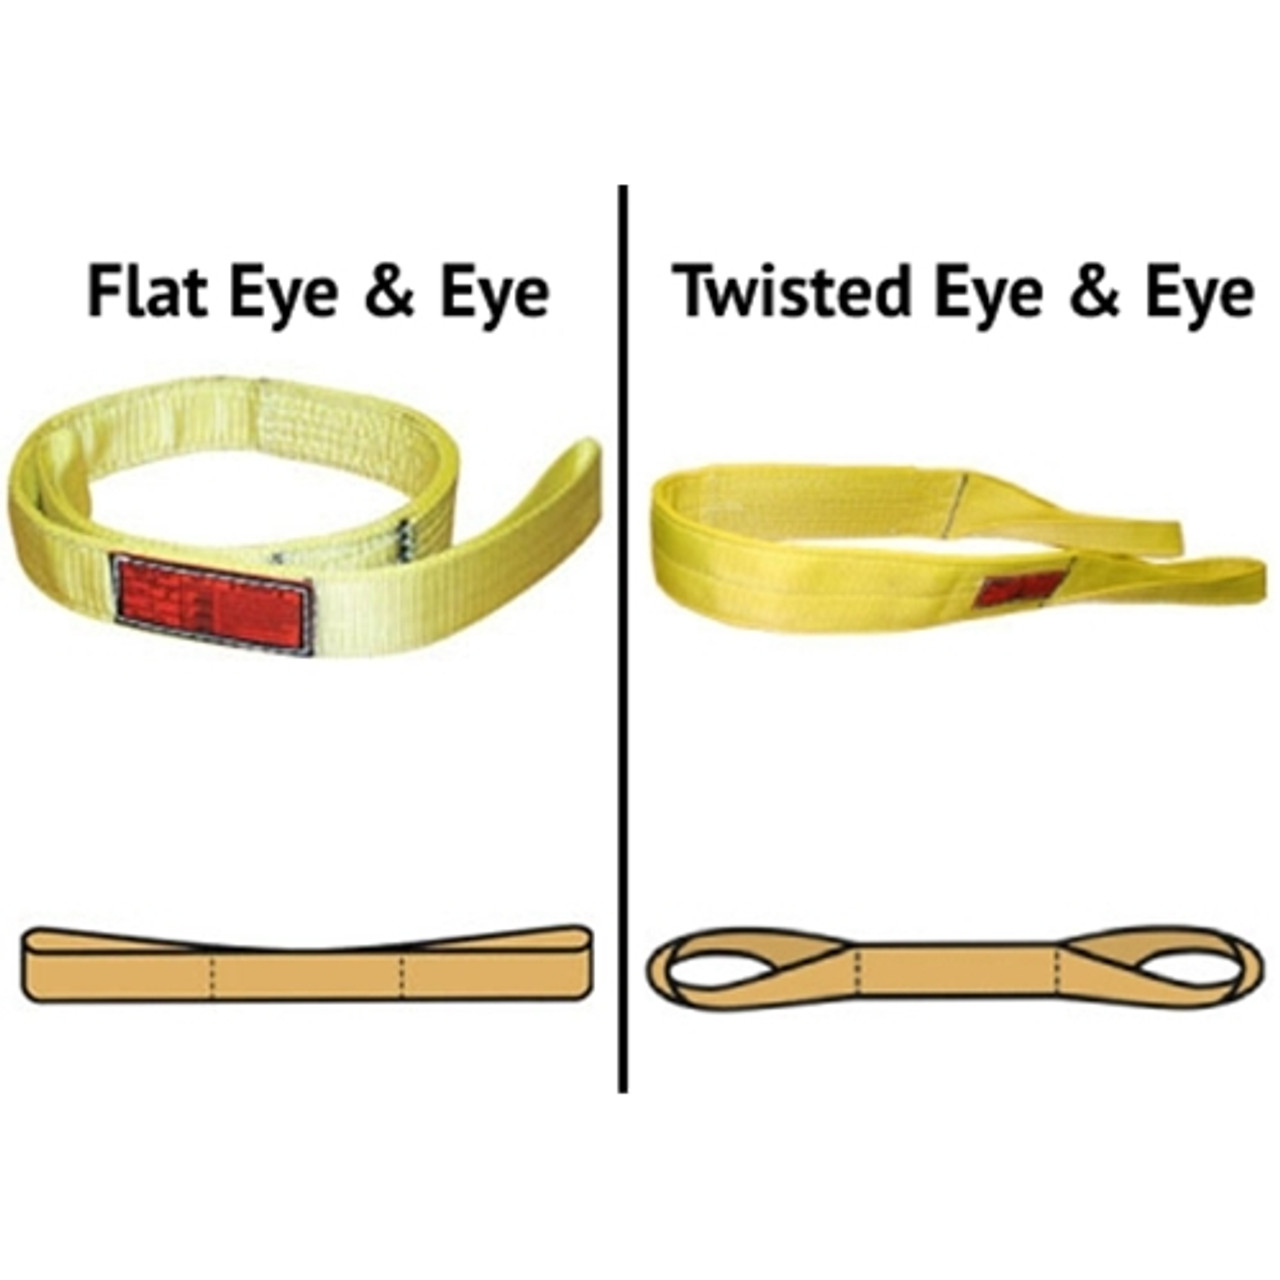 2 ply - 2 x 2' - Eye & Eye Flat Nylon Lifting Sling - Made in the USA